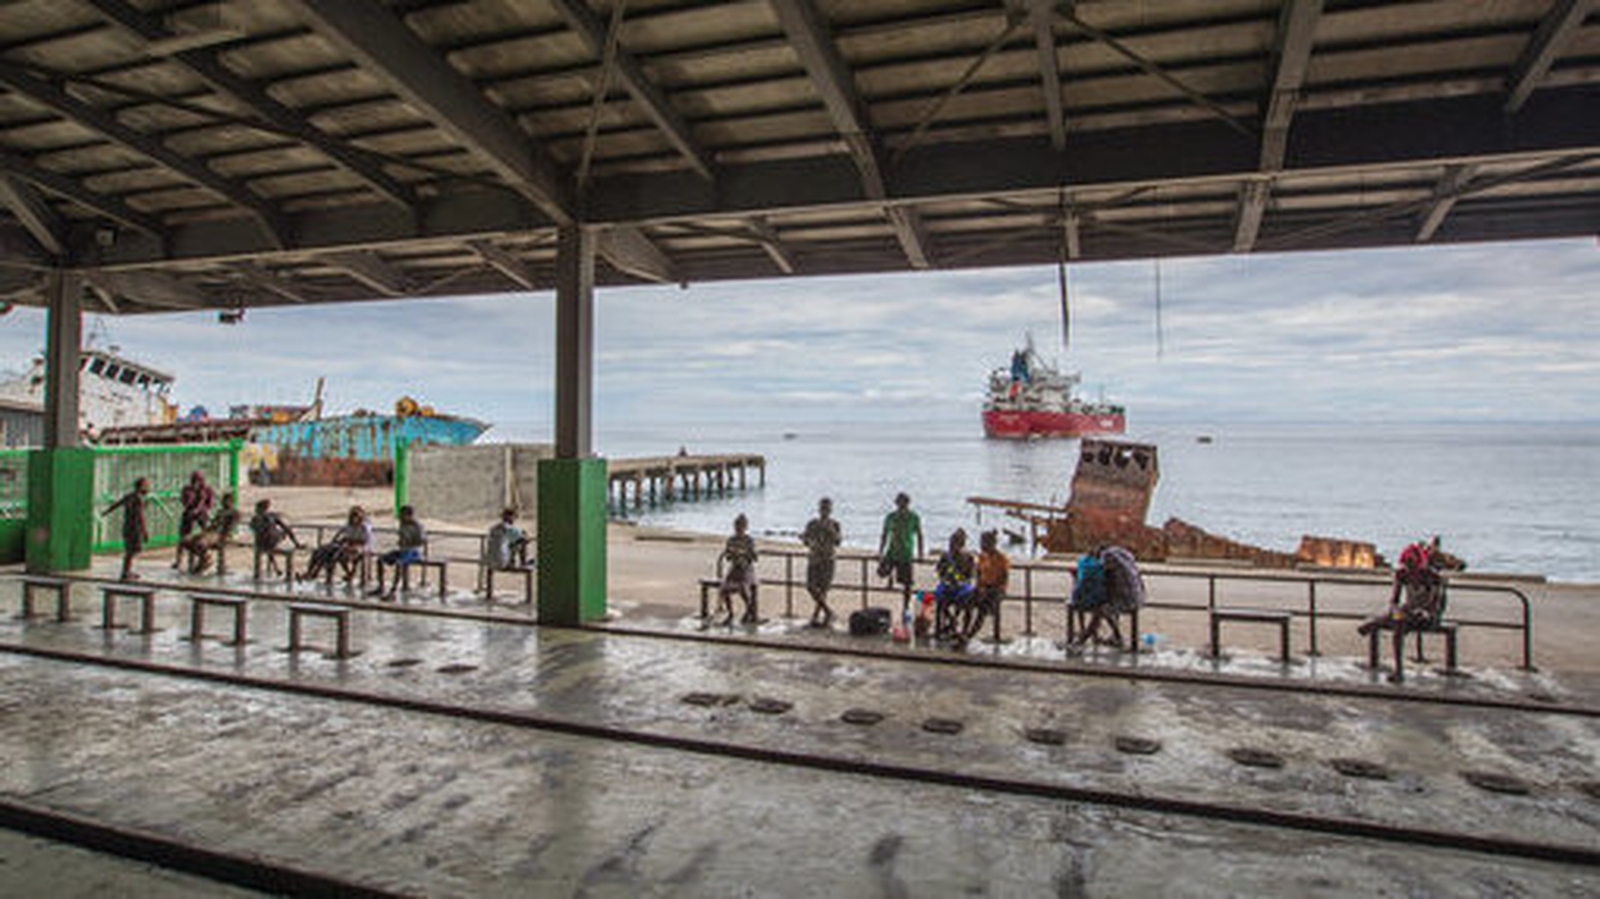 Νησιά Σολομώντα: Κυκλώνας «χτύπησε» πλοίο που μετέφερε 28 επιβάτες που επέστρεφαν σπίτι τους λόγω κορωνοϊού